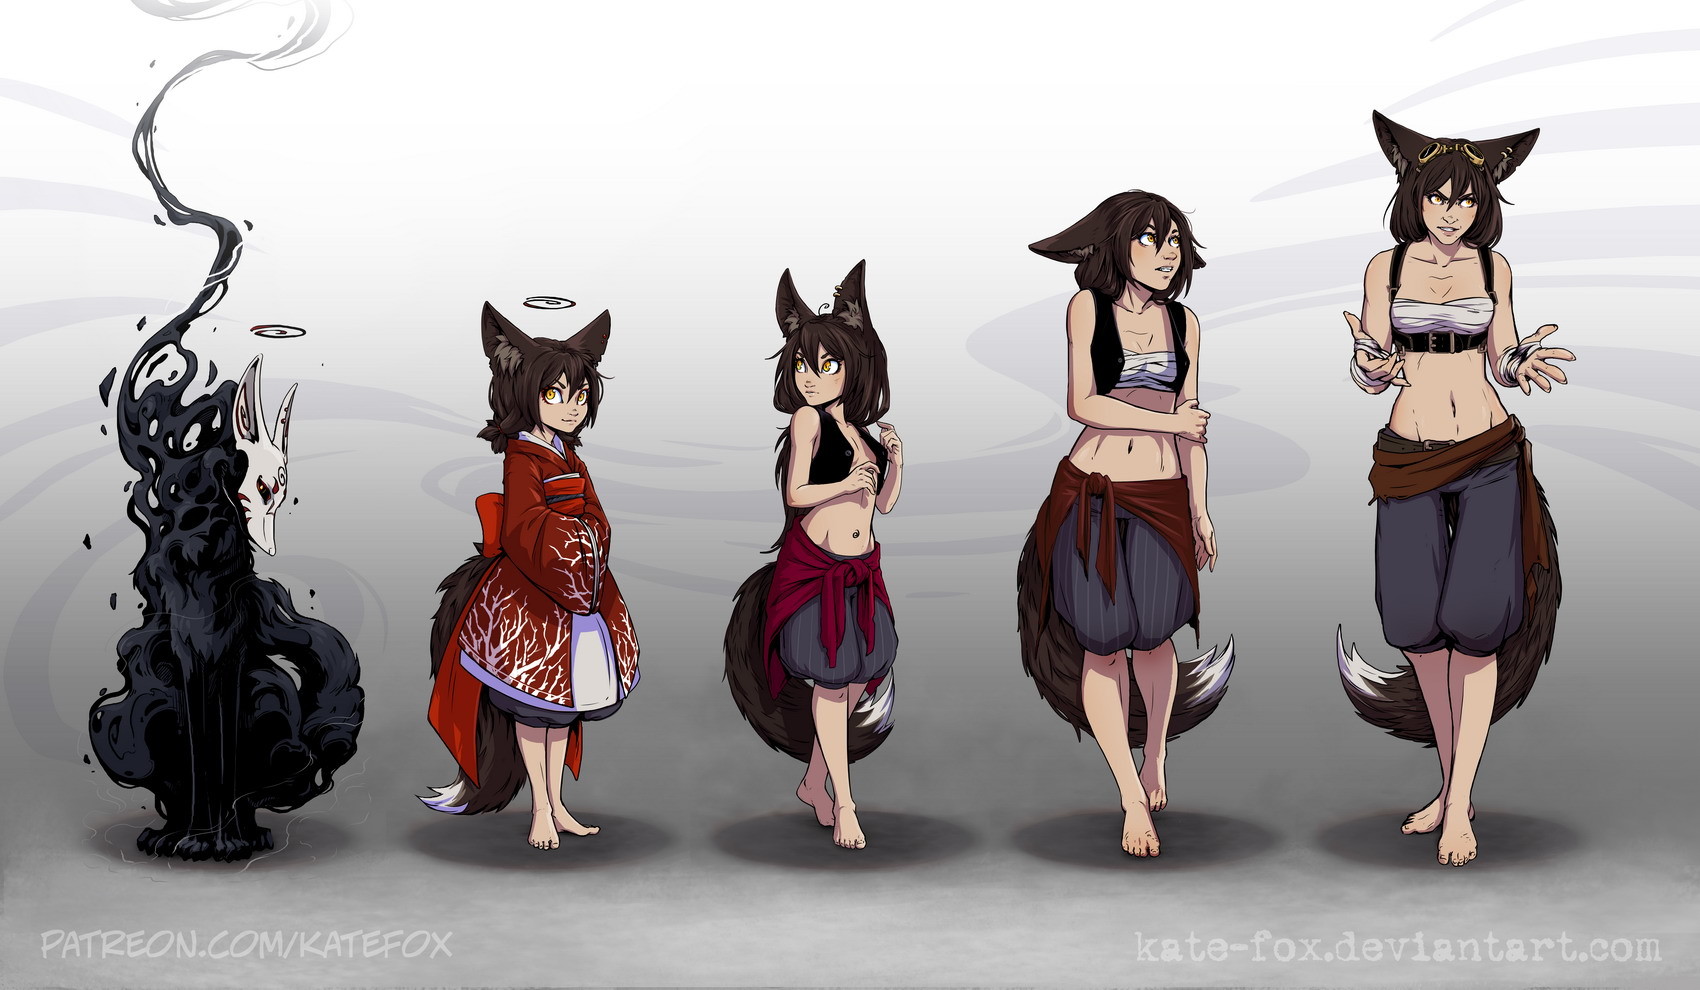 kate-fox-evolution.jpg